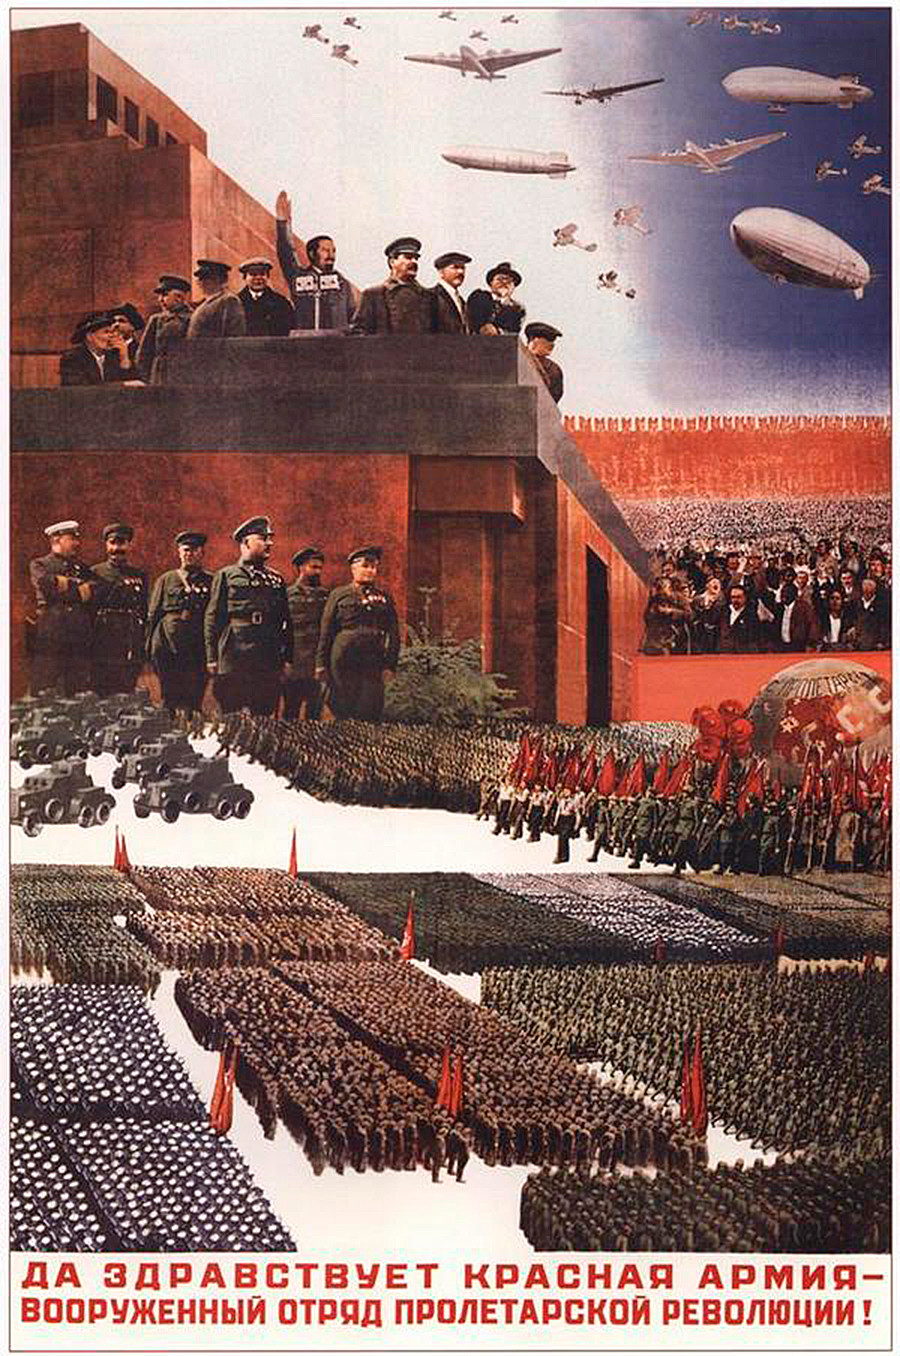 « Vive l’Armée rouge, détachement armé de la révolution du prolétariat ! »